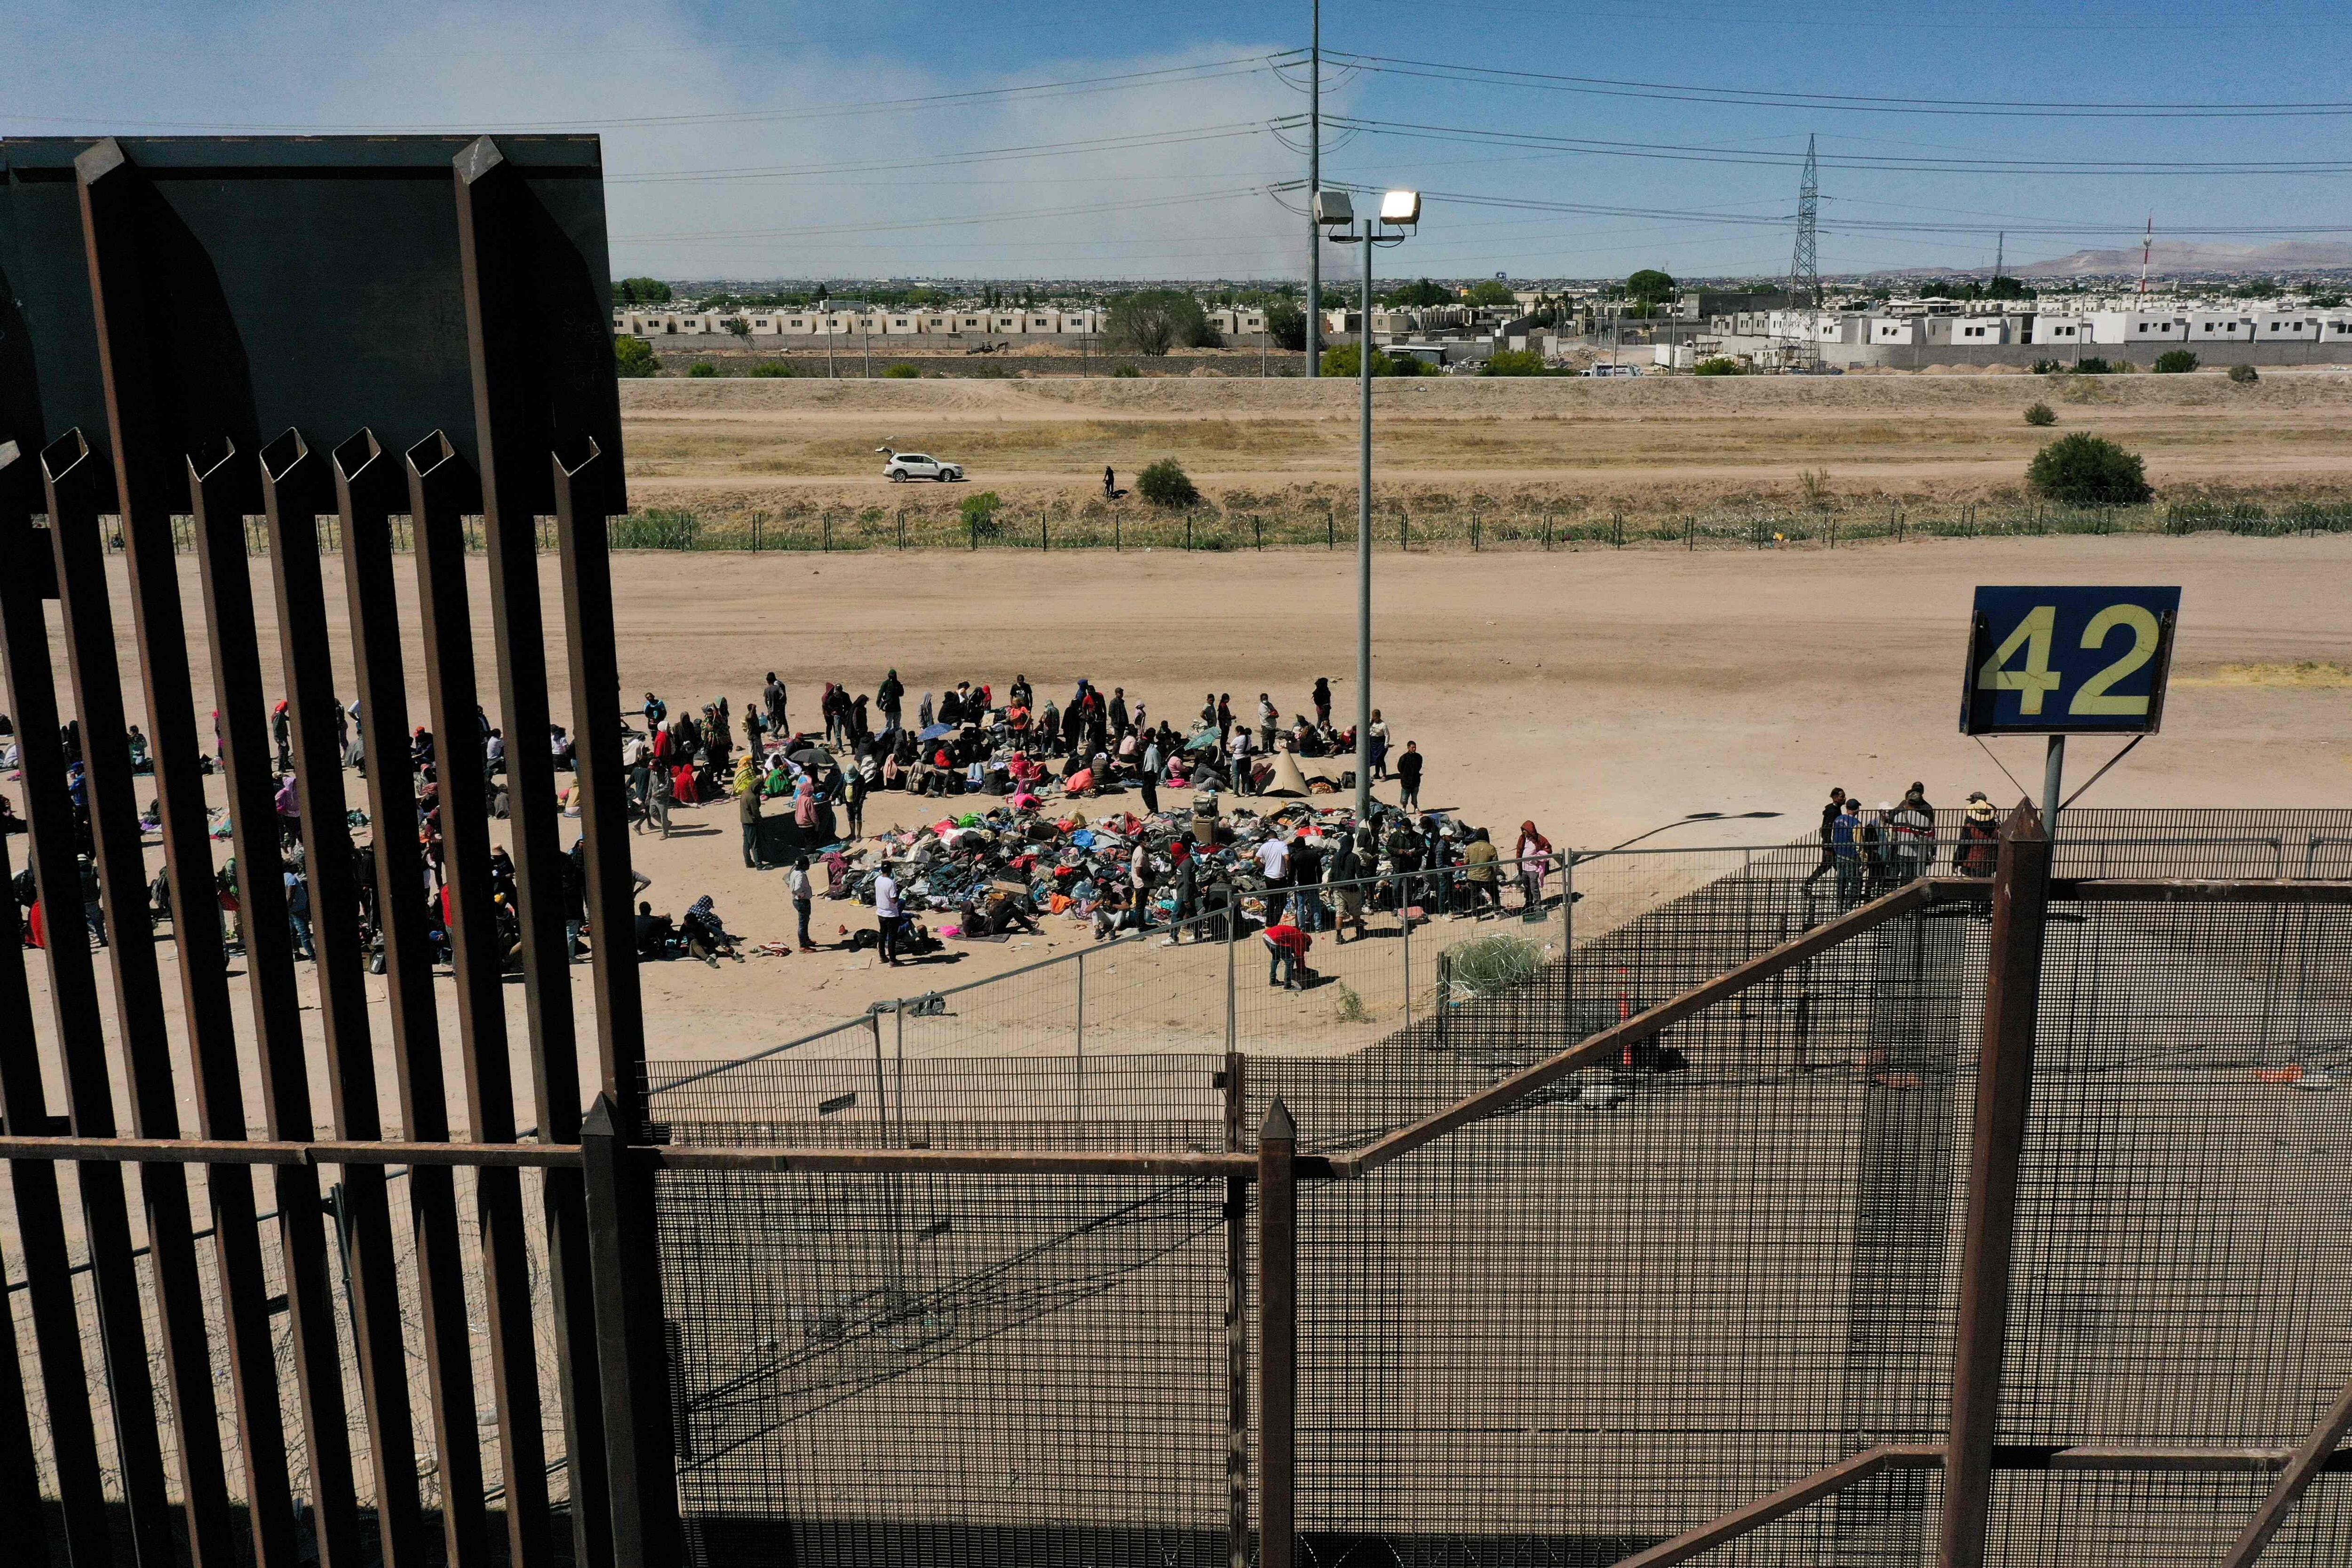 Flujo de migrantes bajó a la mitad luego de cambio de norma interpuesta por Estados Unidos 